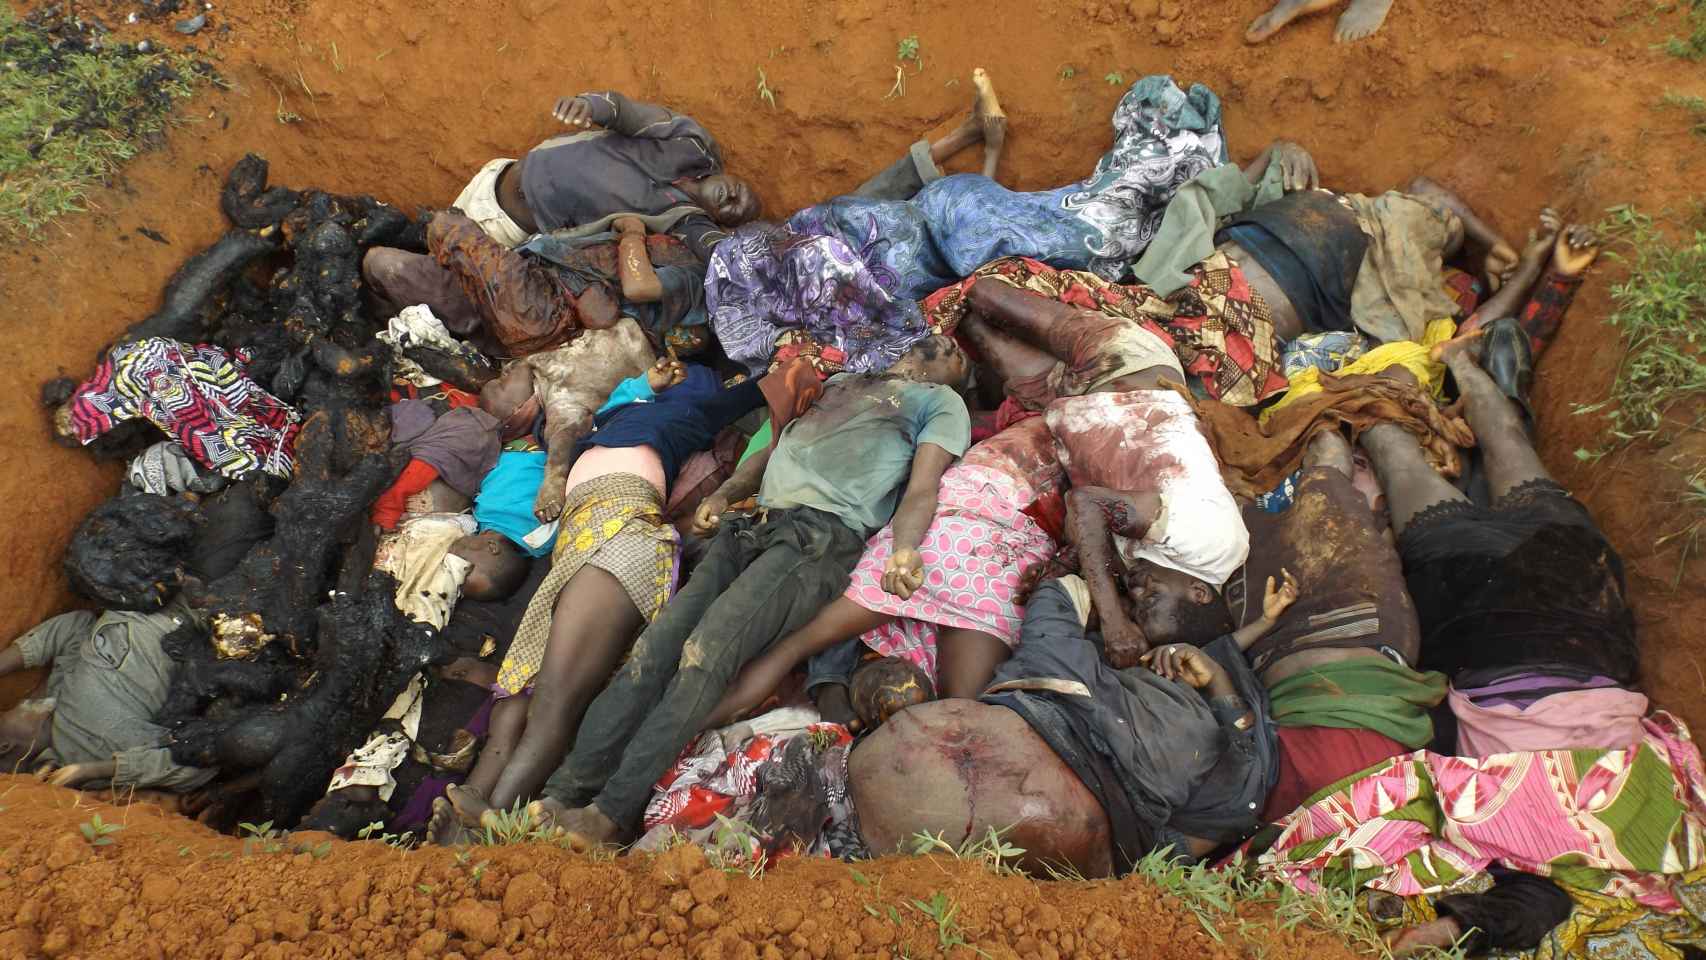 Iglesia - En sólo un mes más de 200 cristianos han sido asesinados en Nigeria por musulmanes - Página 5 Nigeria-Terrorismo-Genocidio-Boko_Haram-Mundo_449467338_139648665_1706x960